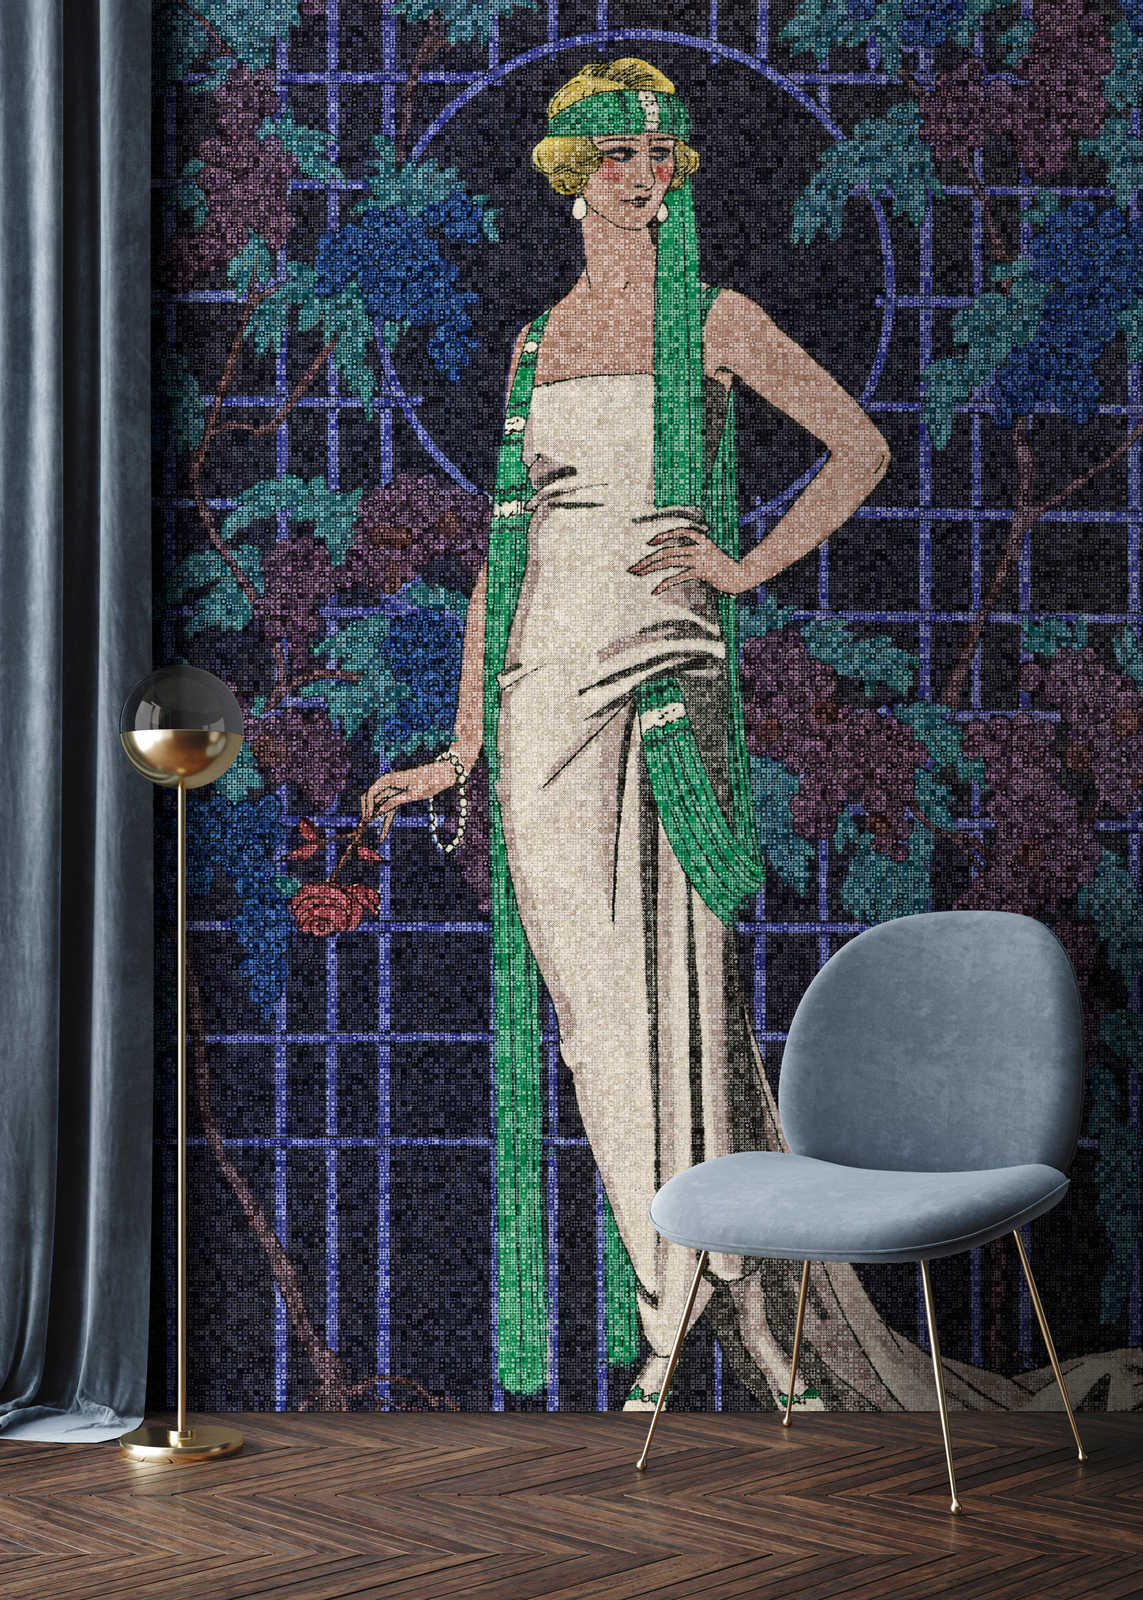             Scala 2 - Papel Pintado Mosaico Art Deco Motivo Mujer Años 20
        